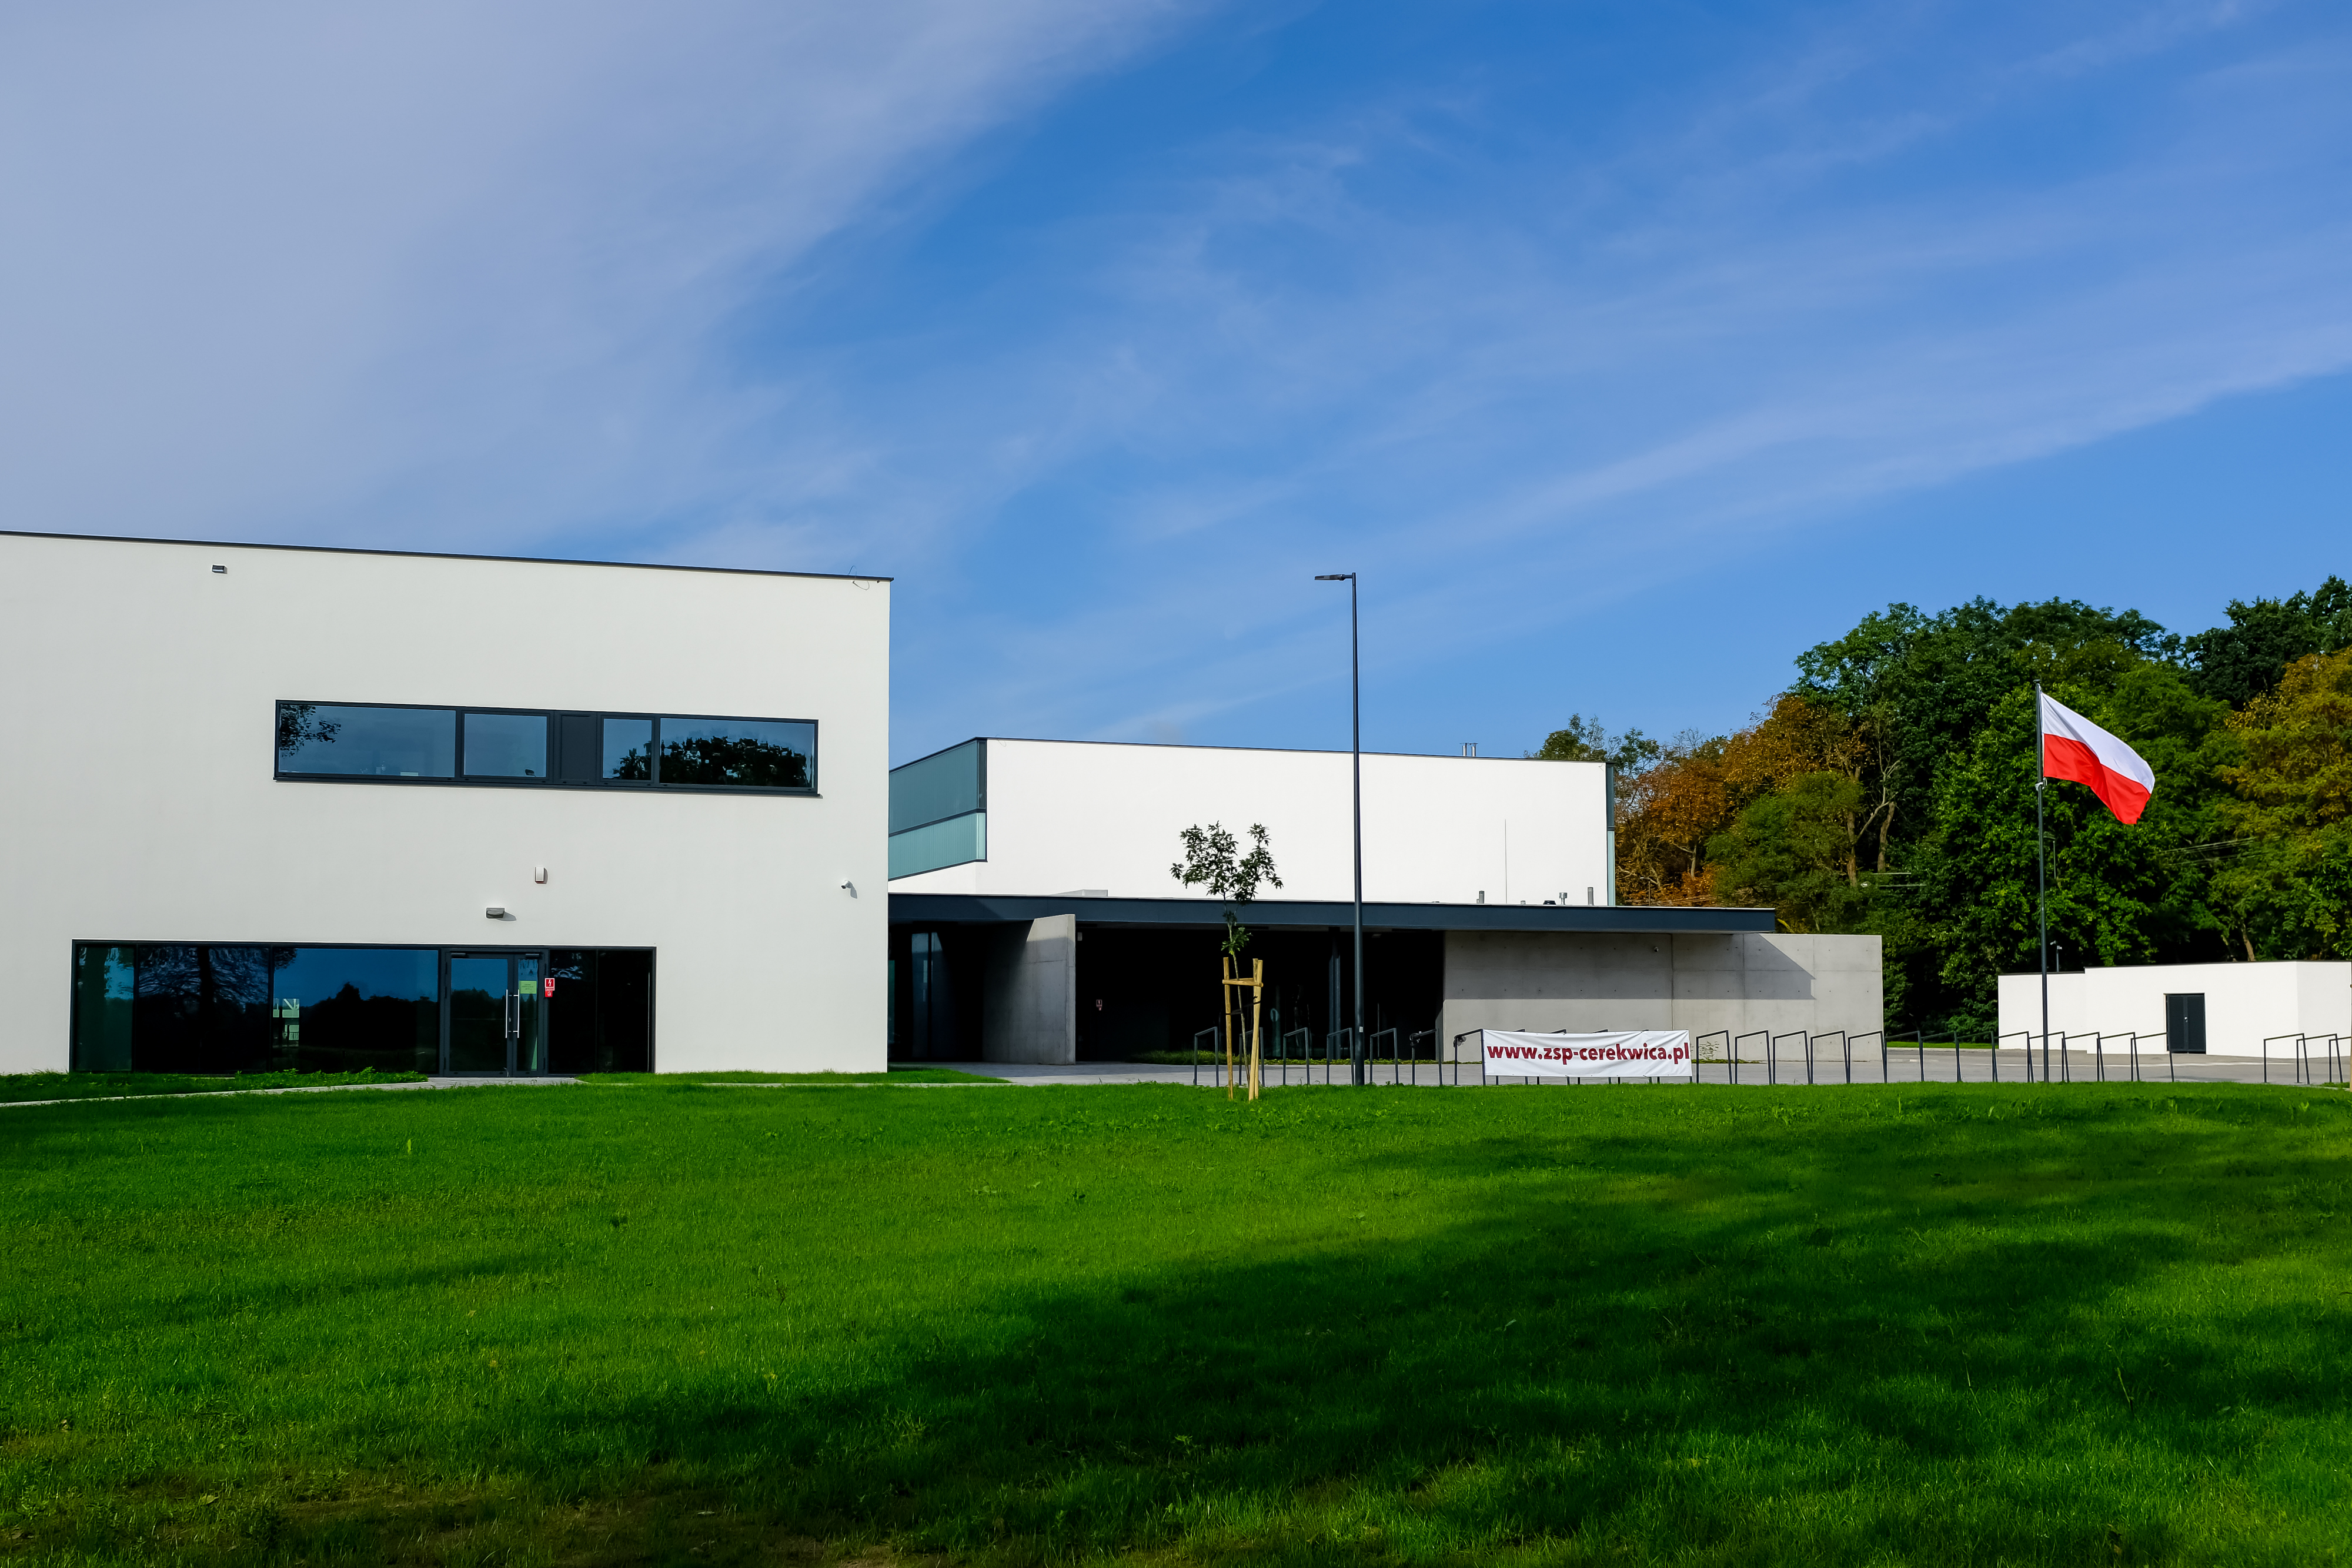 Na zdjęciu widać budynek Szkoły Podstawowej w Cerekwicy. Przed szkołą widoczny szeroki trawnik, po prawej stronie masz z wywieszoną biało-czerwoną flagą.